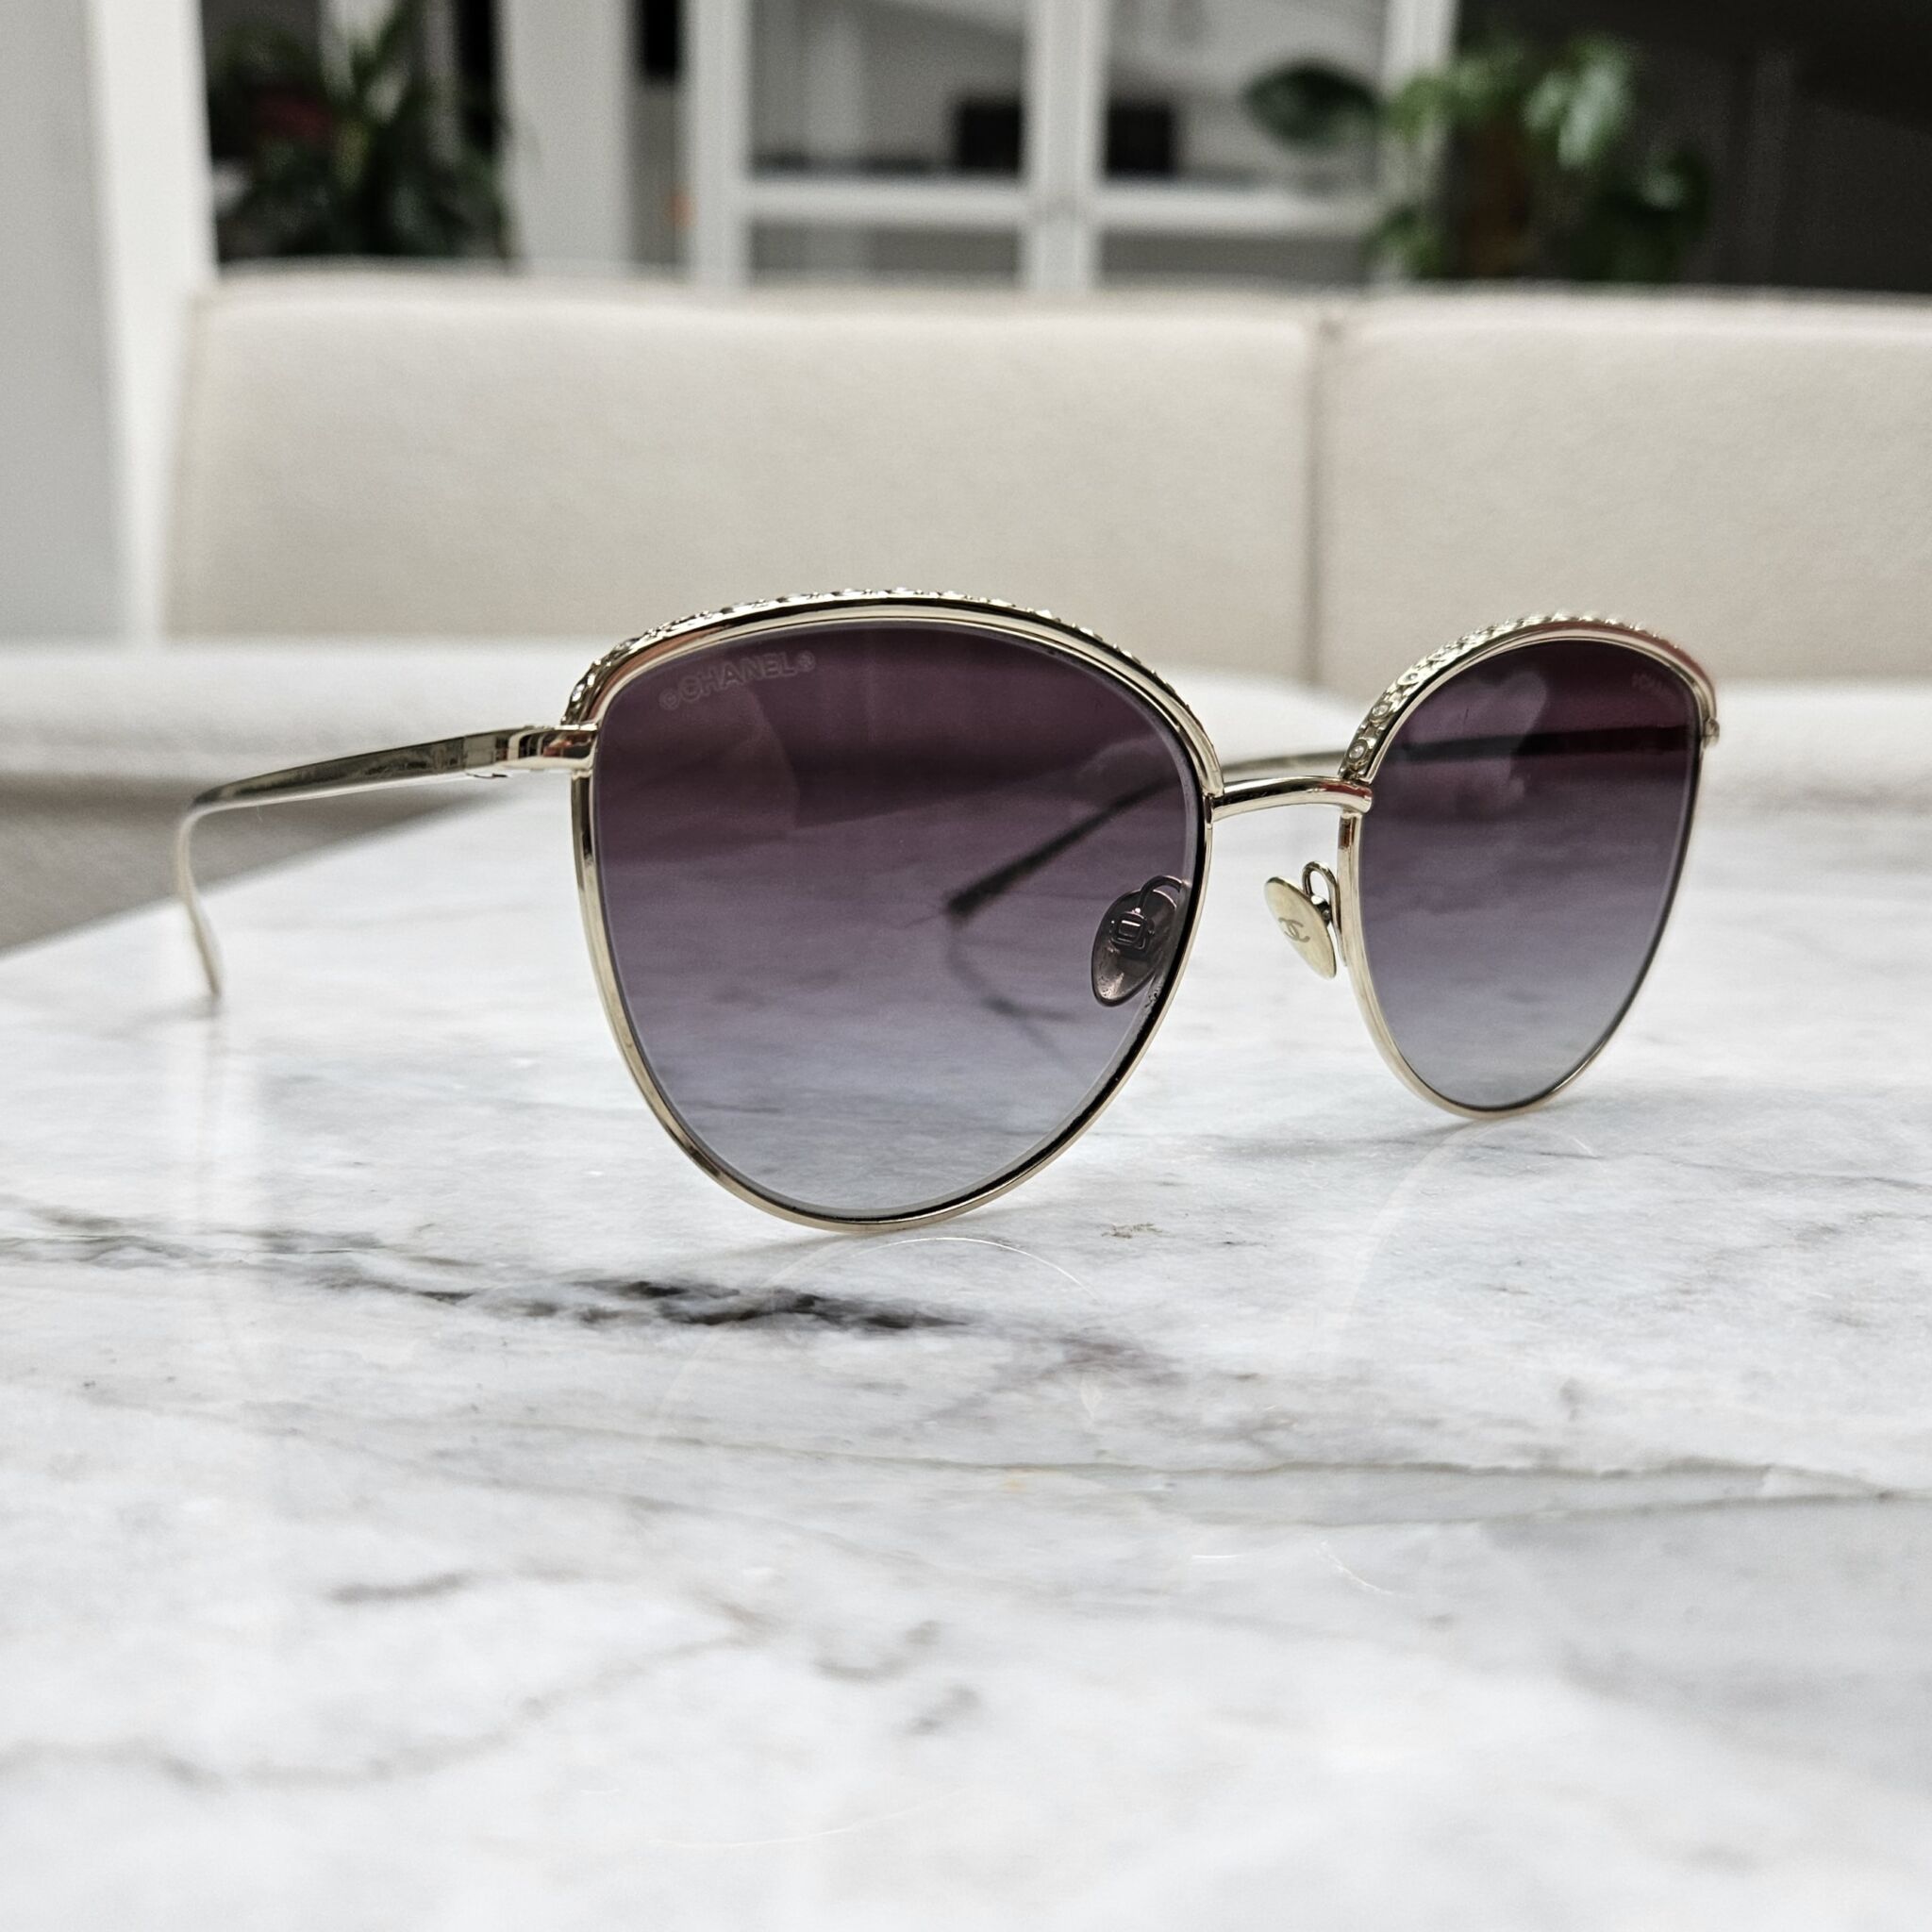 coco chanel sunglasses sale